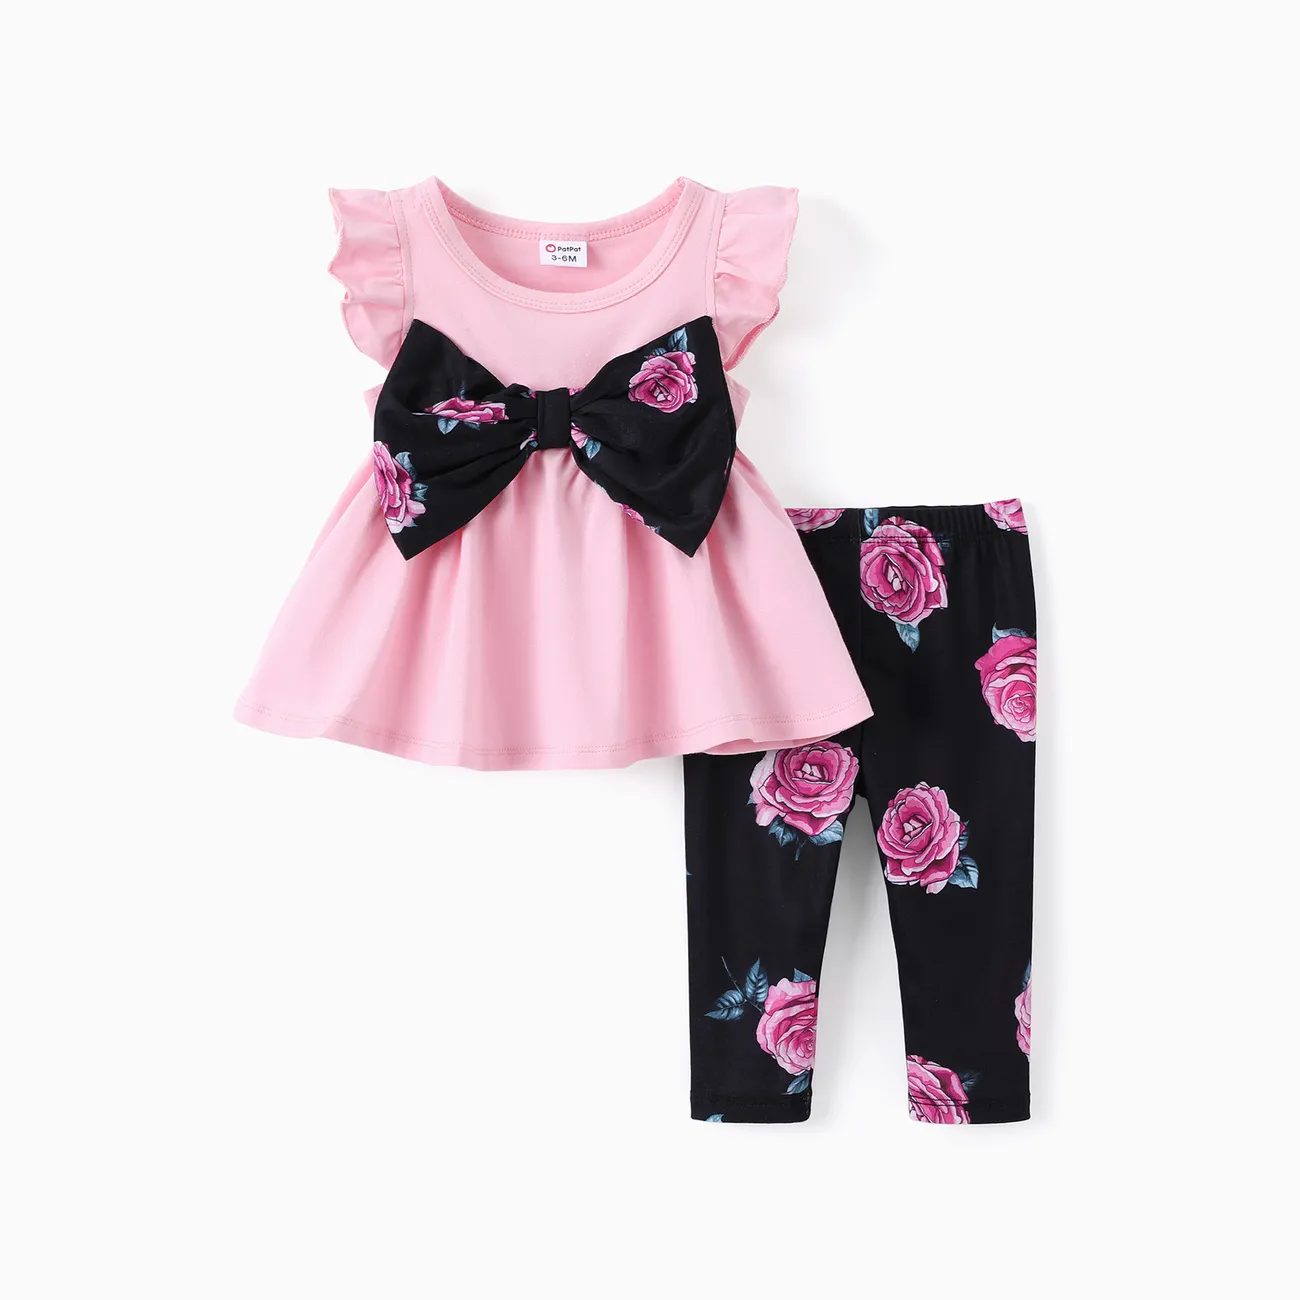 嬰兒/幼兒女孩 2 件裝 Sweet Bowtnot 飄袖上衣和花卉印花緊身褲套裝 粉色 big image 1